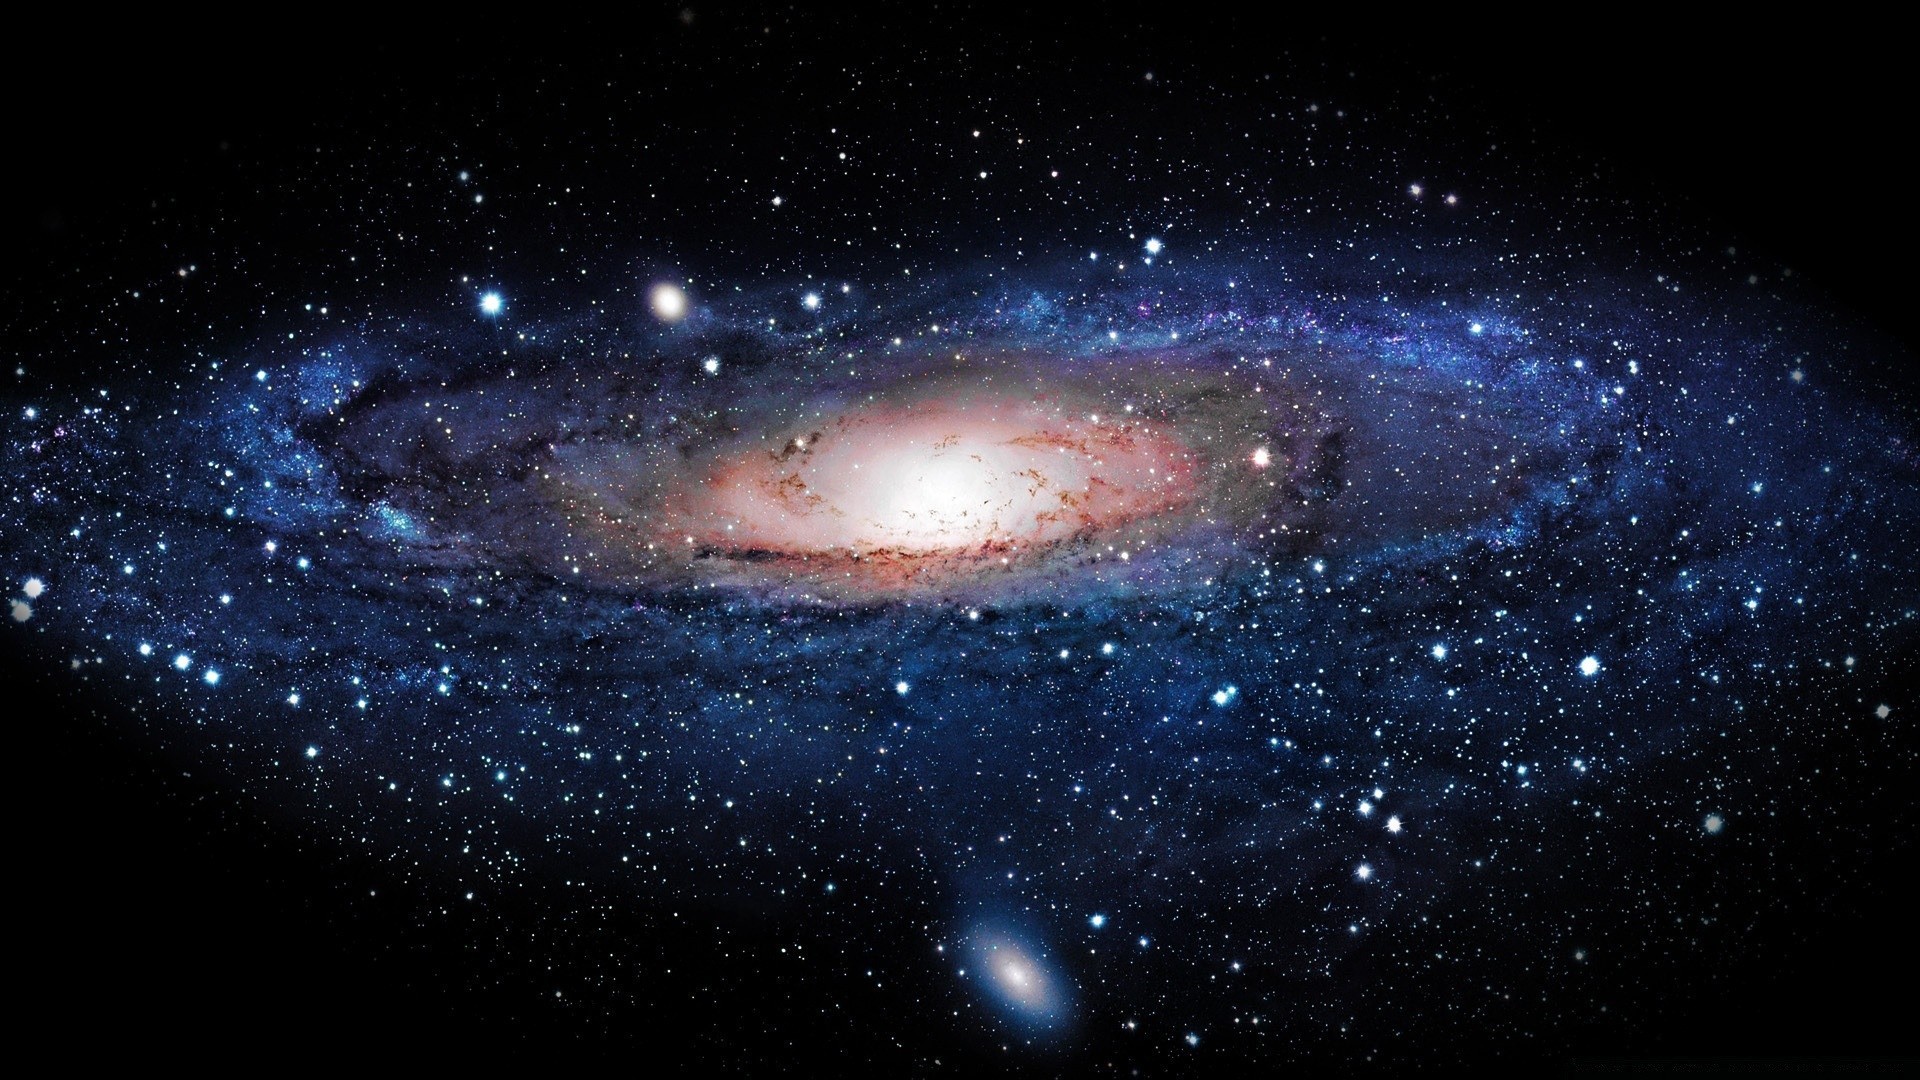 галактики астрономия пространство туманность созвездие разведка космос бесконечность пыль планеты луна наука астрология солнечной системы сверхновая телескоп темный стеллар огромный орион